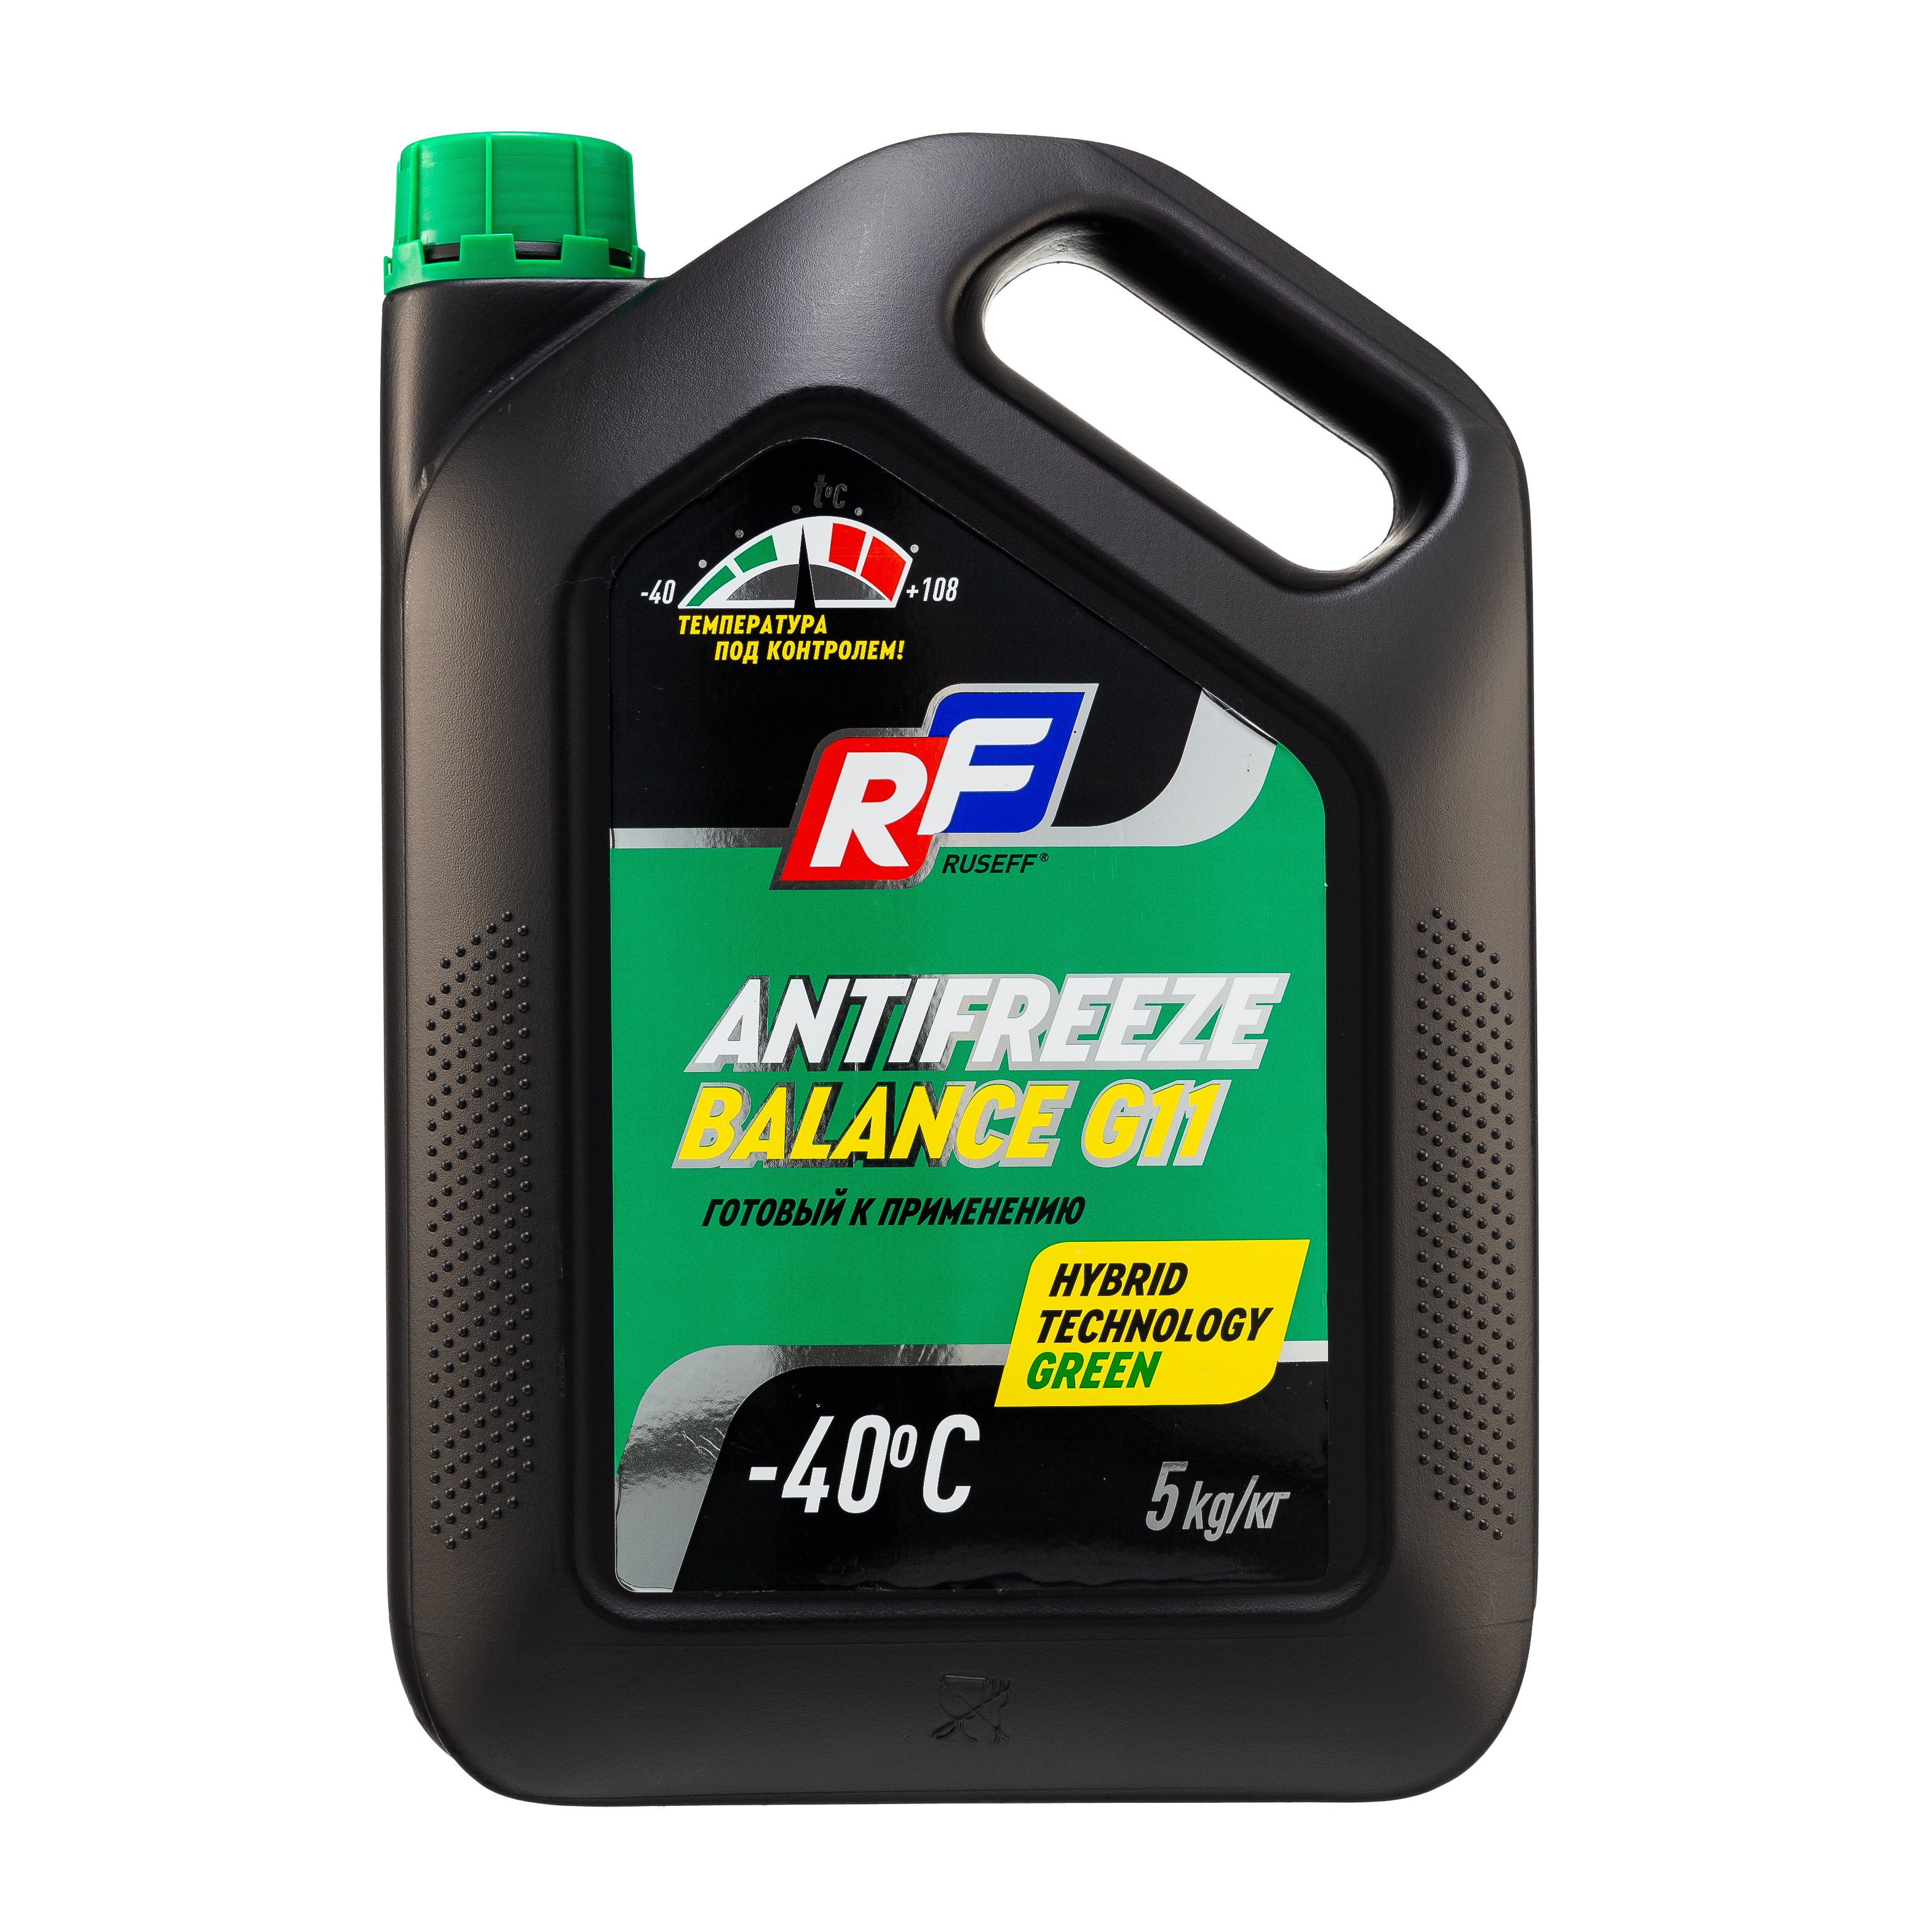 Жидкость охлаждающая Ruseff Antifreeze Balance G11 5кг